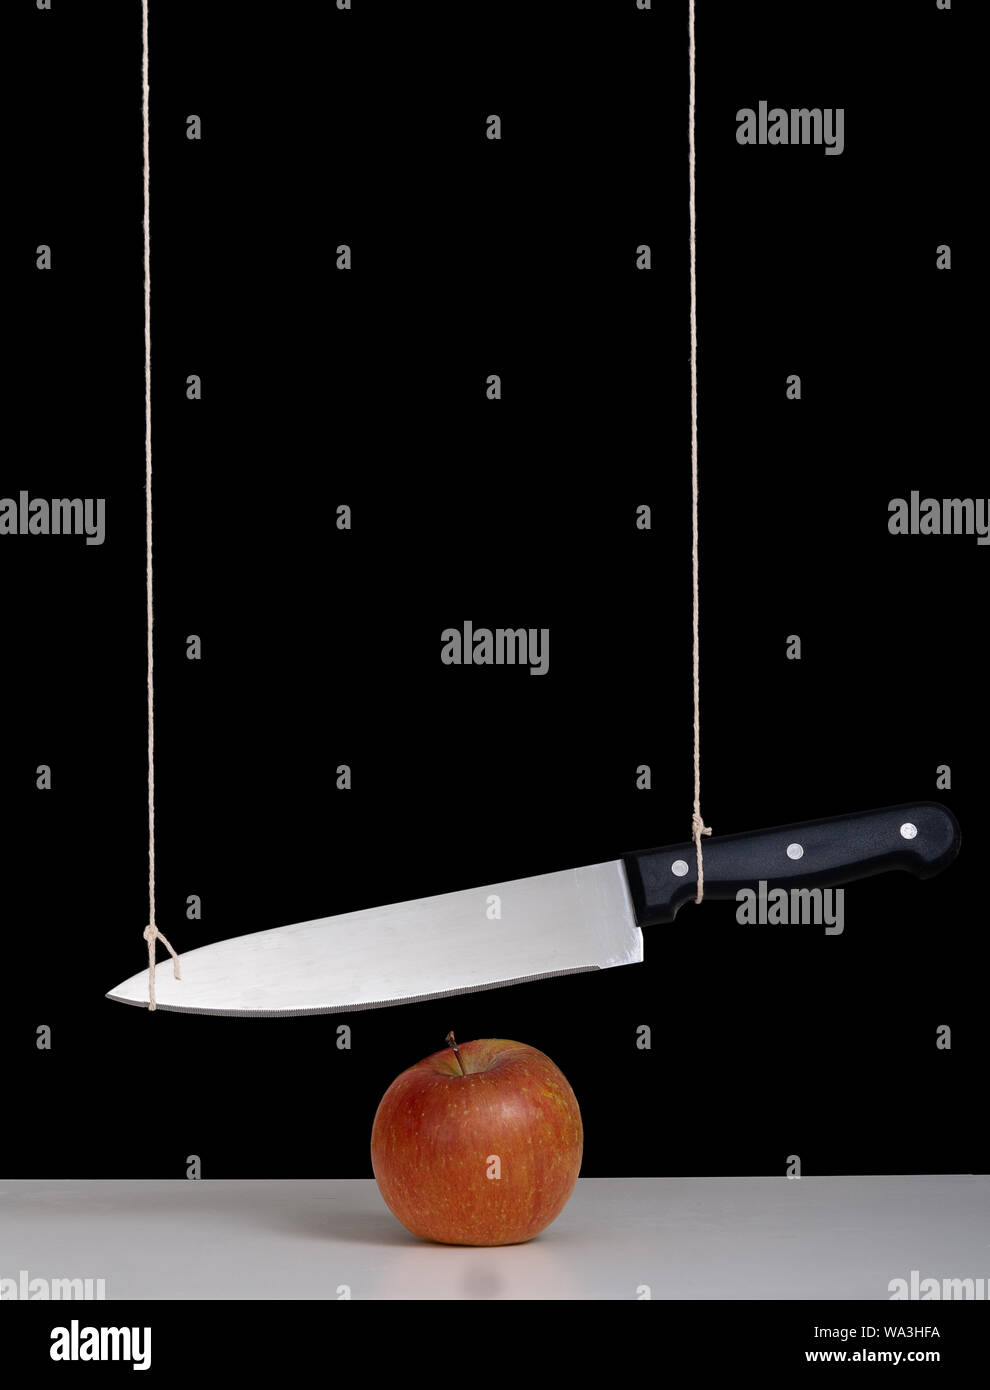 Spada di damocle minaccia, il concetto di rischio, metafora - grande coltello legato e sospeso su apple. Ancora in vita con sfondo nero. Foto Stock